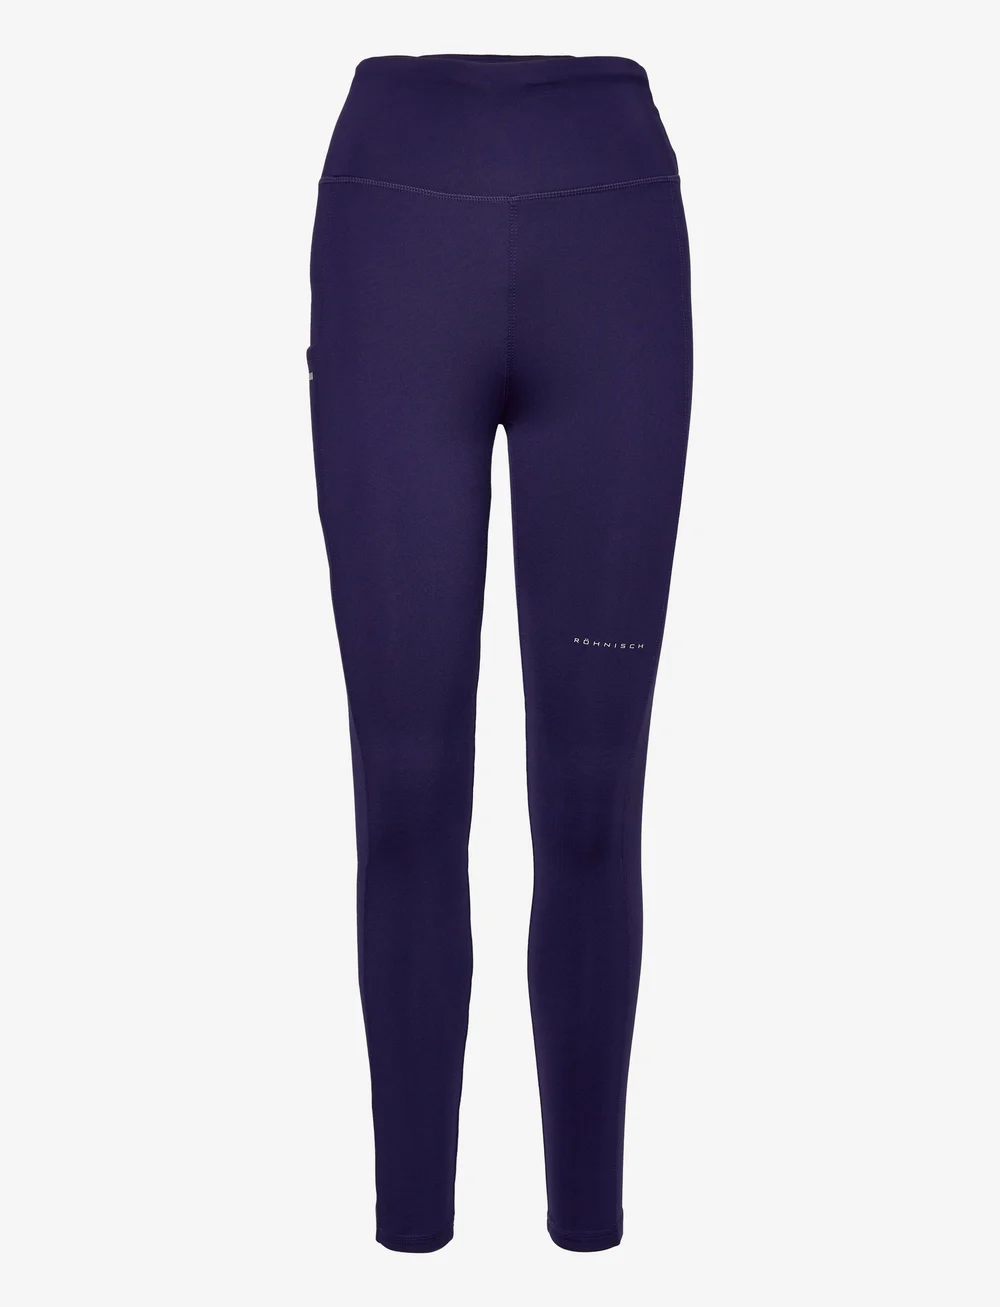 Röhnisch Thermal Tights – leggings & tights – shop at Booztlet